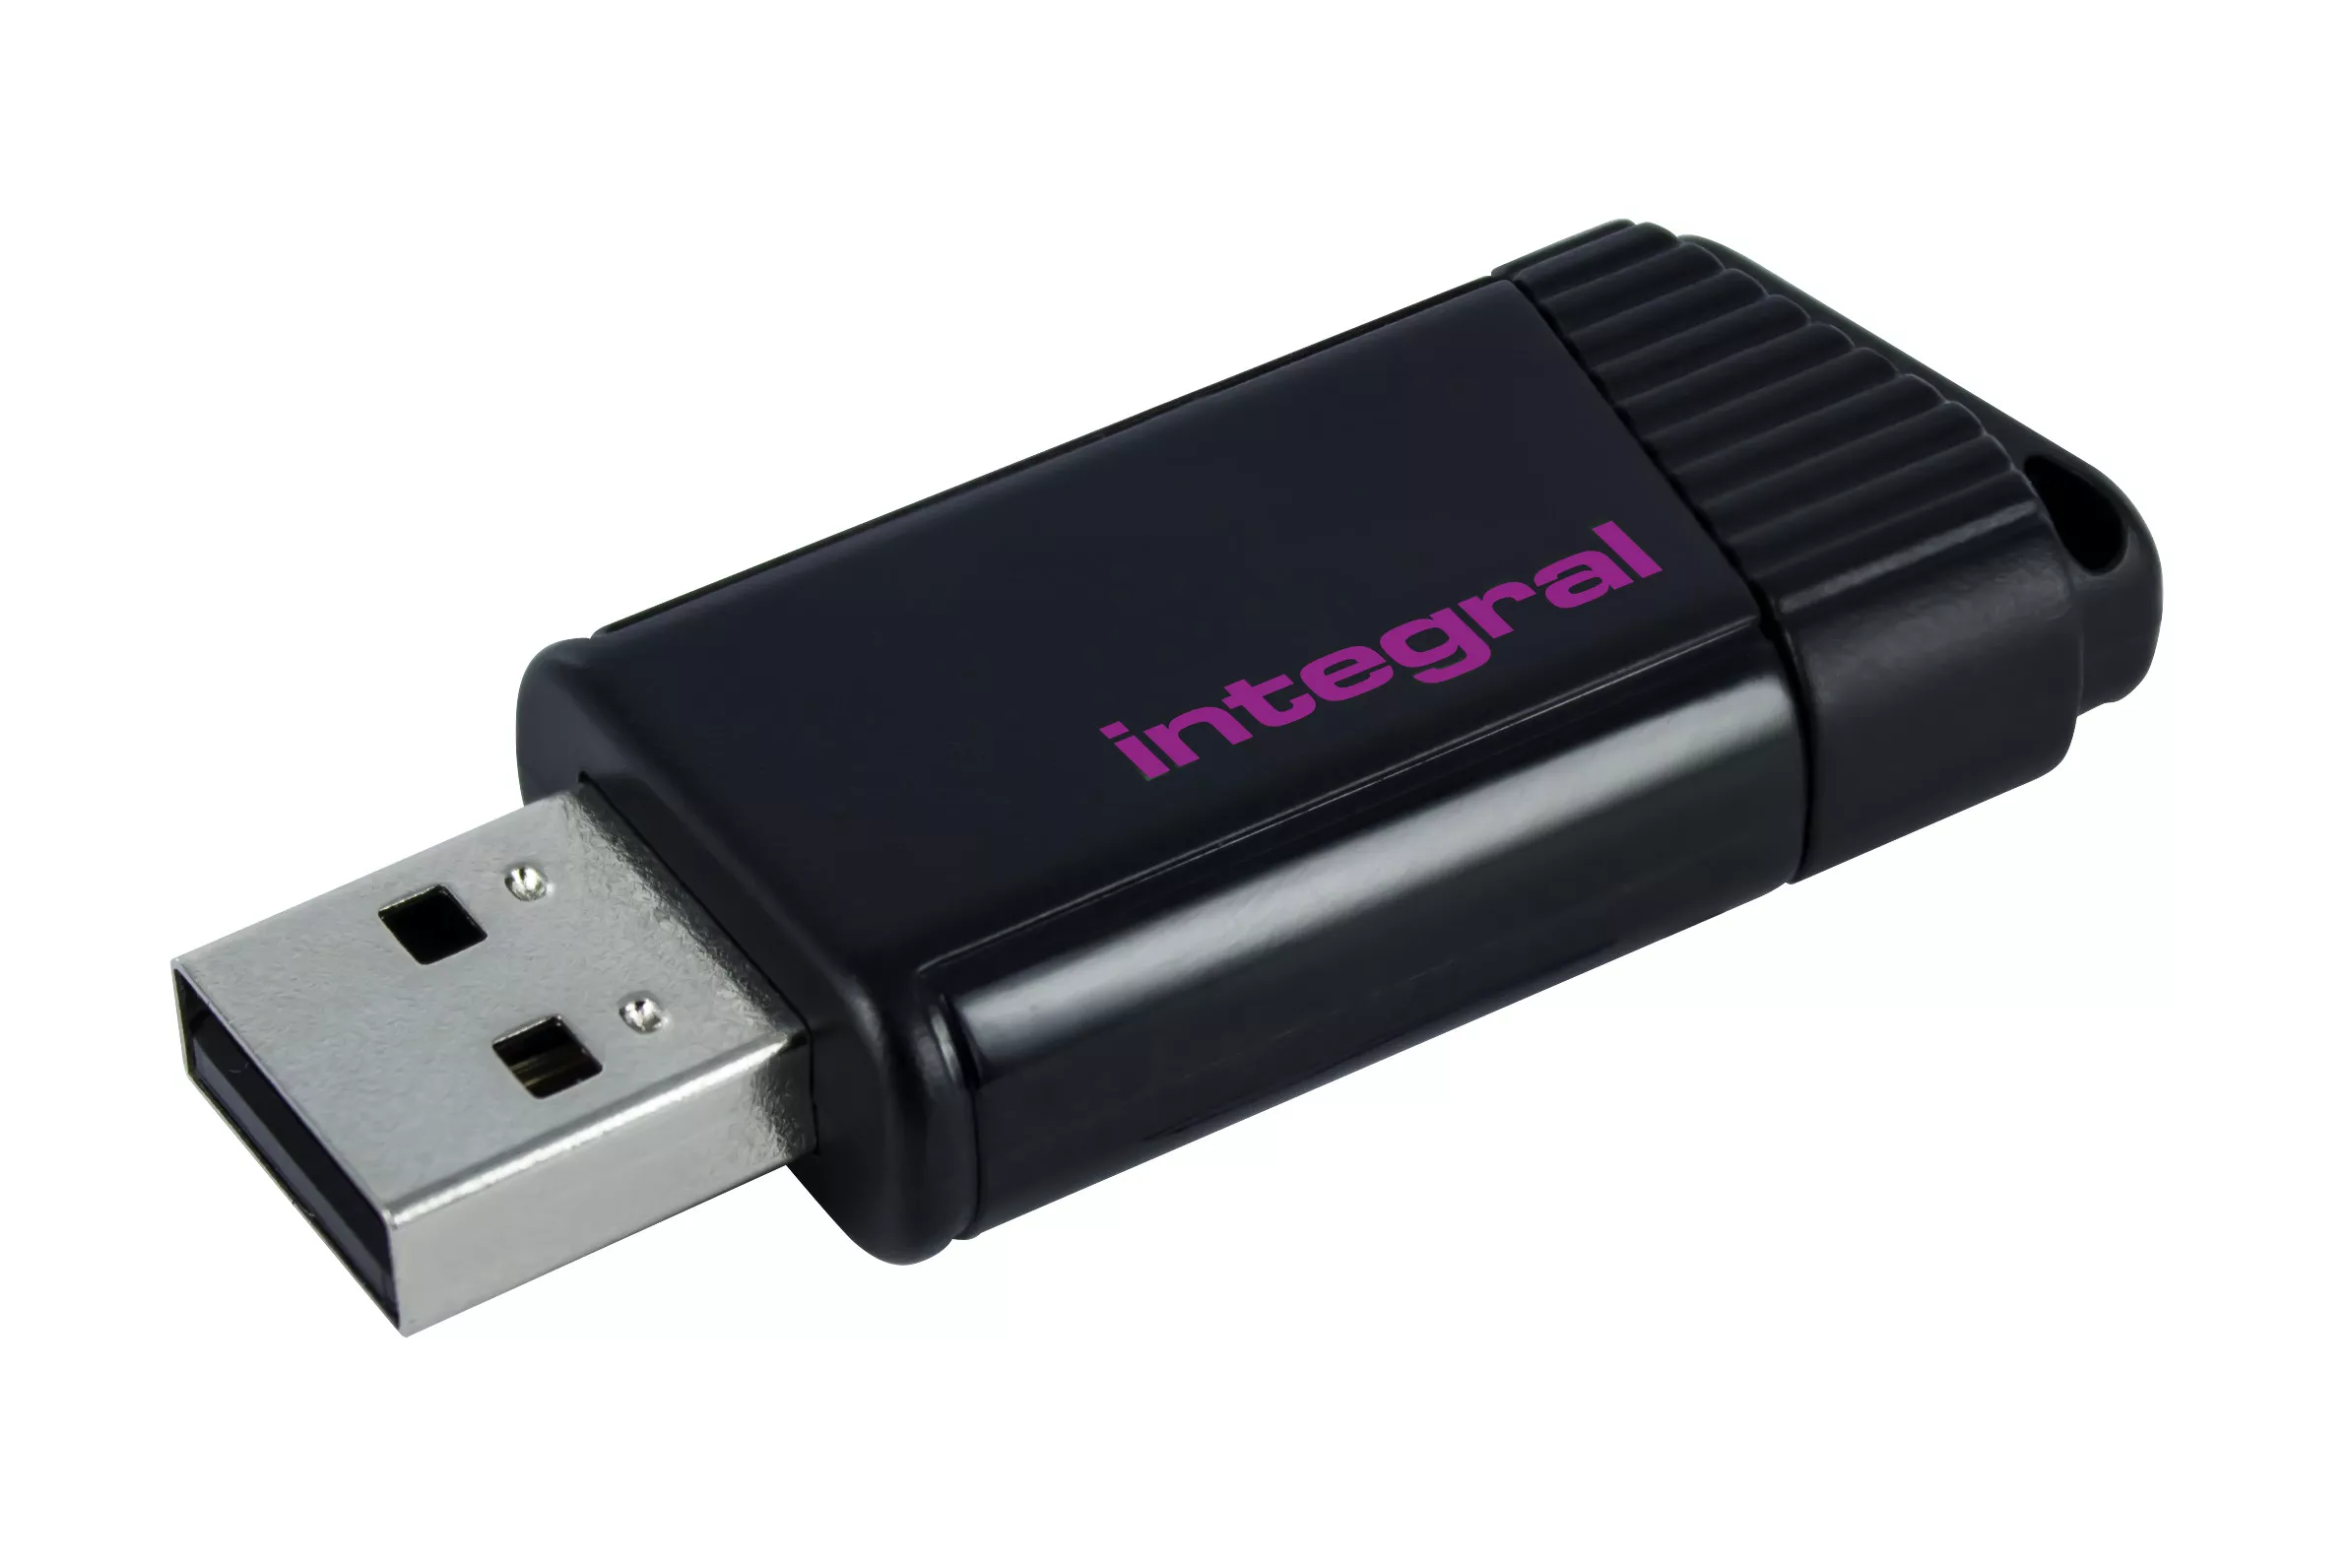 Achat Integral 8GB USB2.0 DRIVE PULSE PINK INTEGRAL et autres produits de la marque Integral